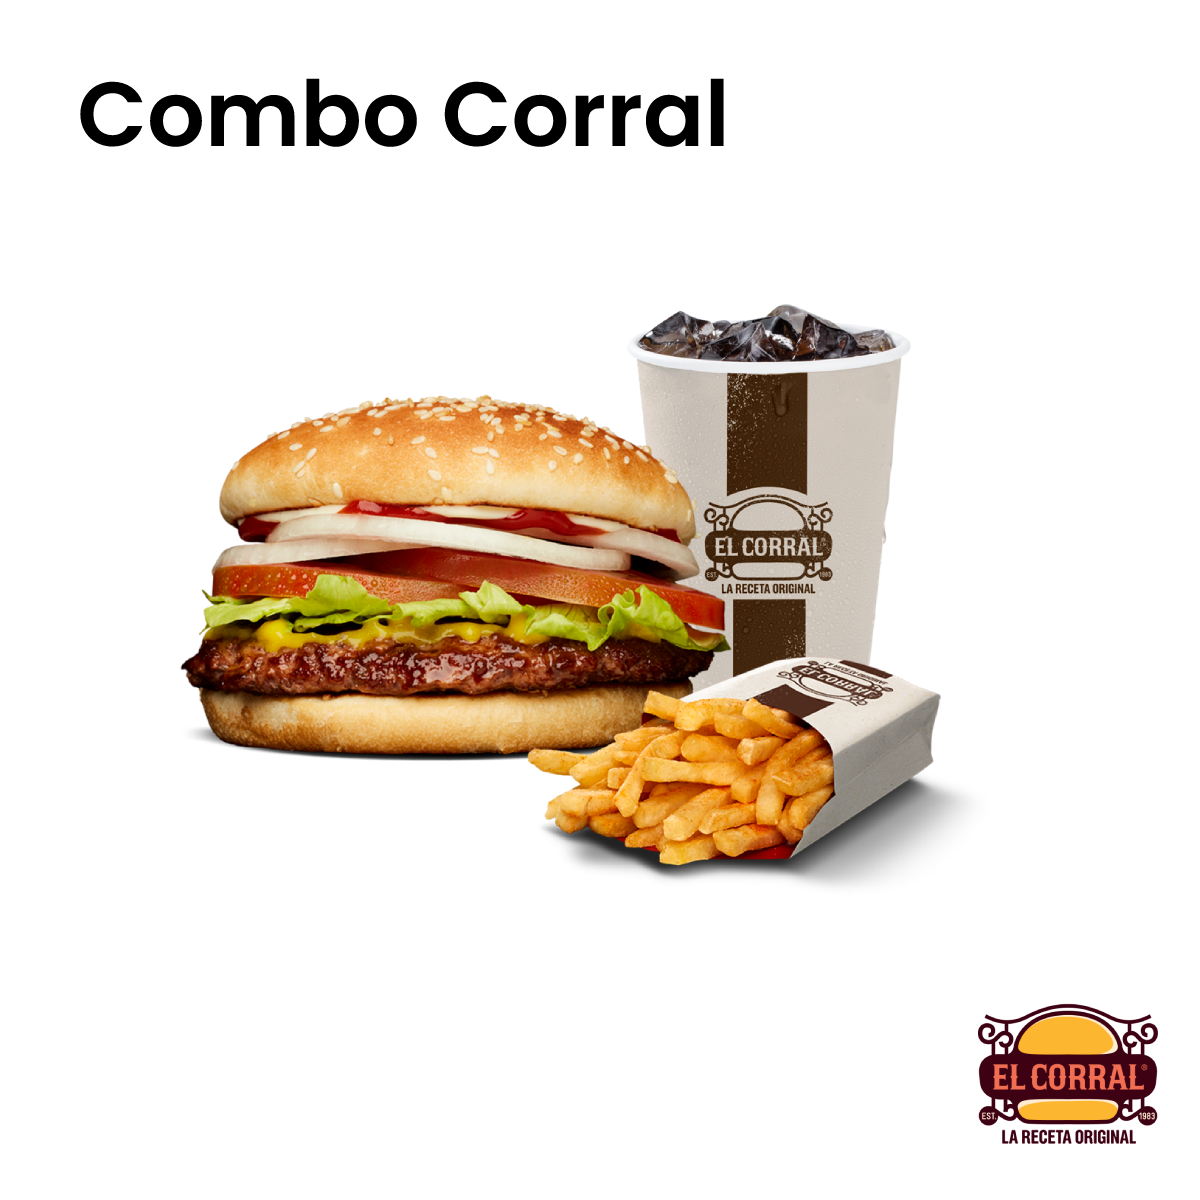 Bono Combo Corral - El Corral